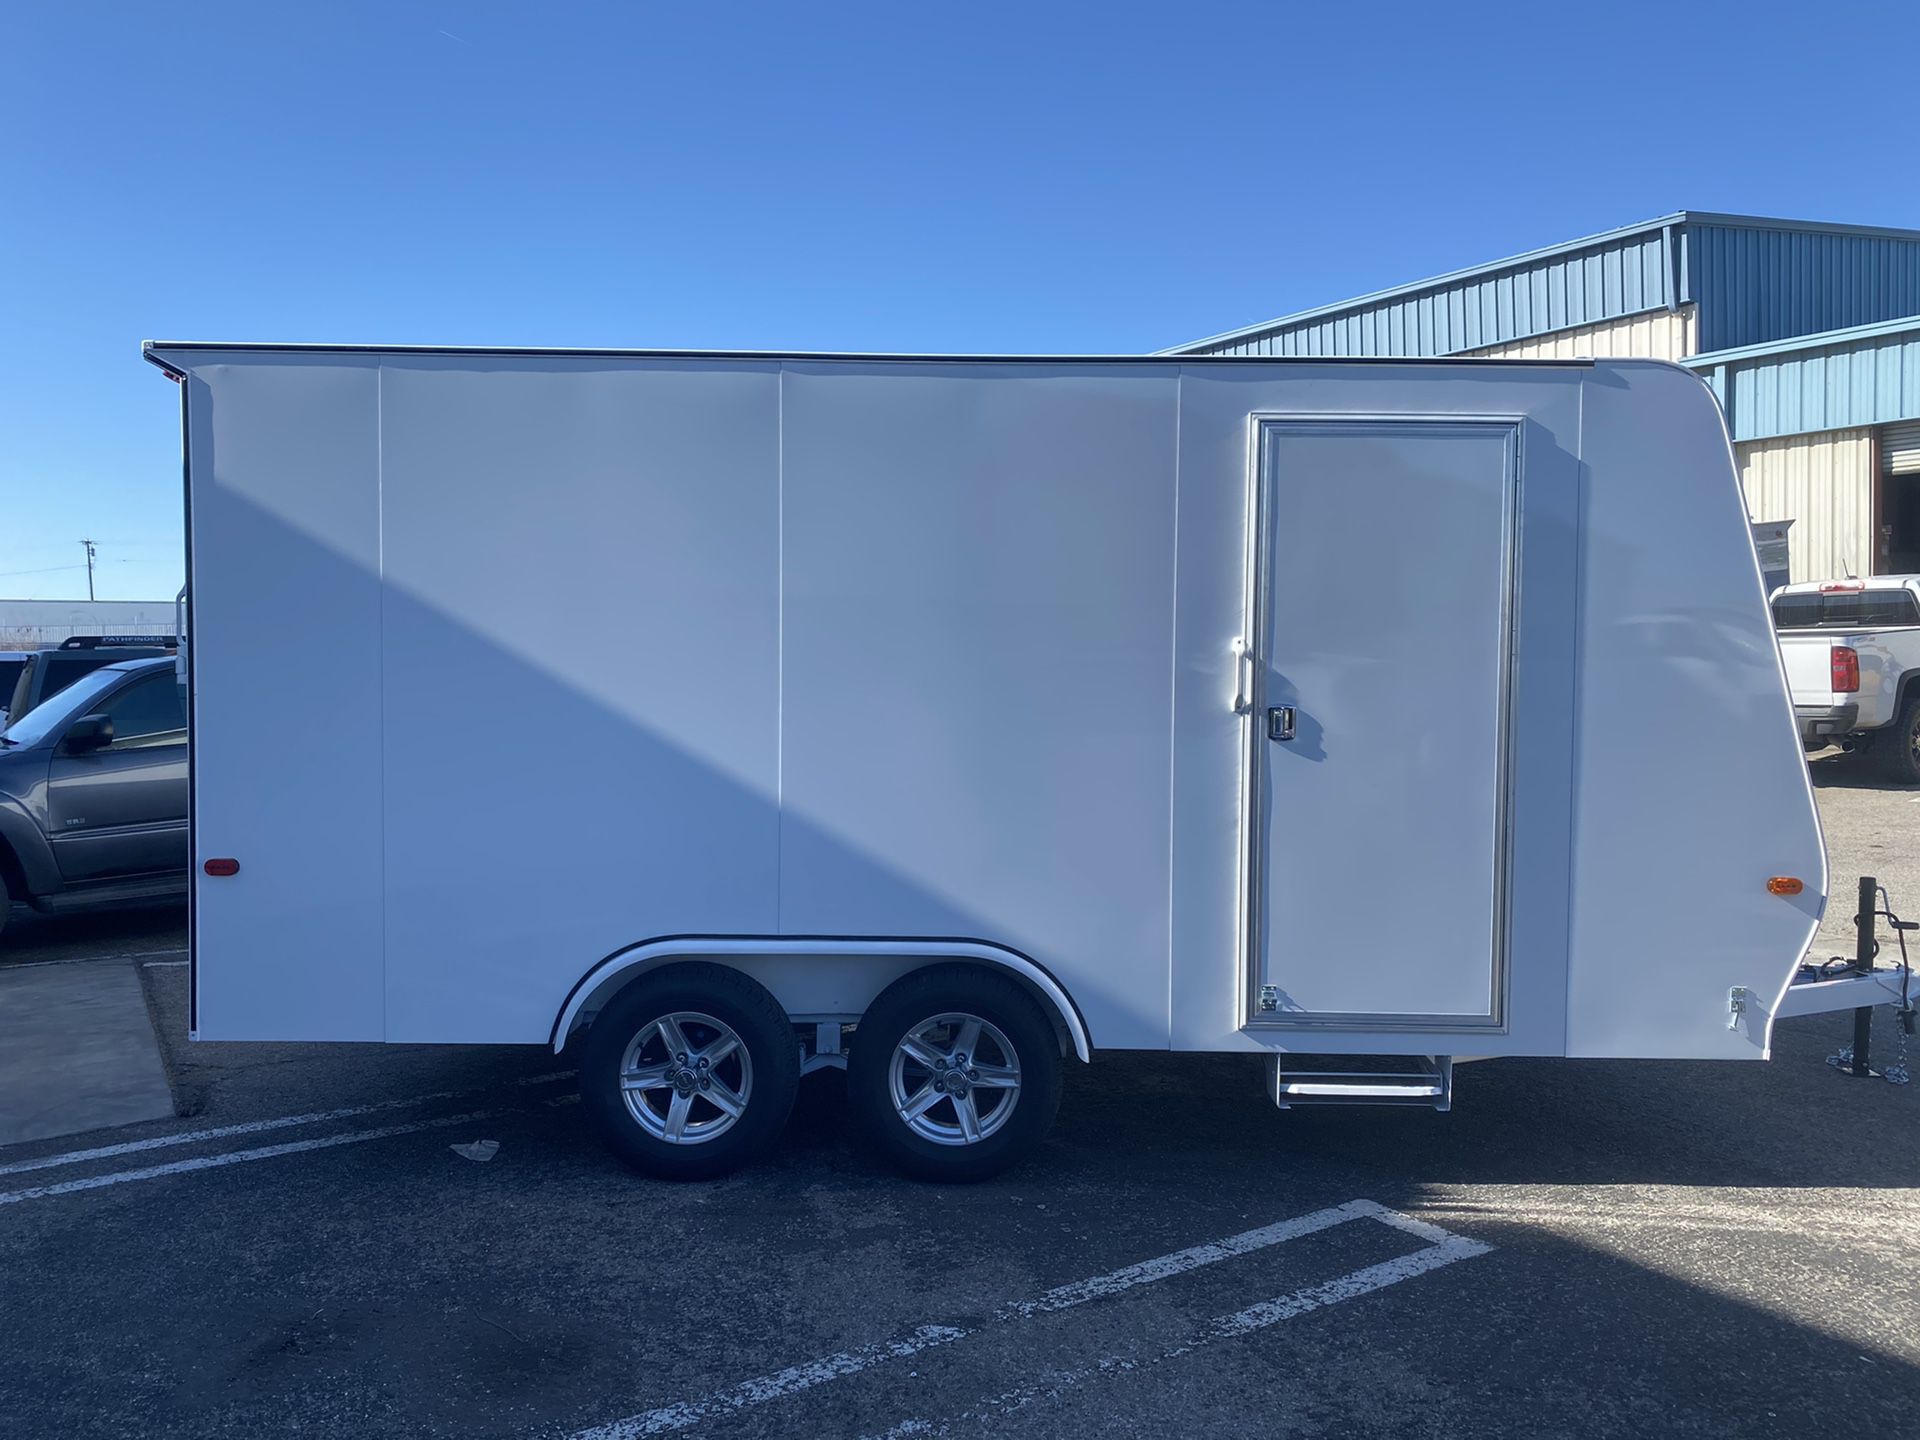 2020, 16x8.5 enclosed trailer